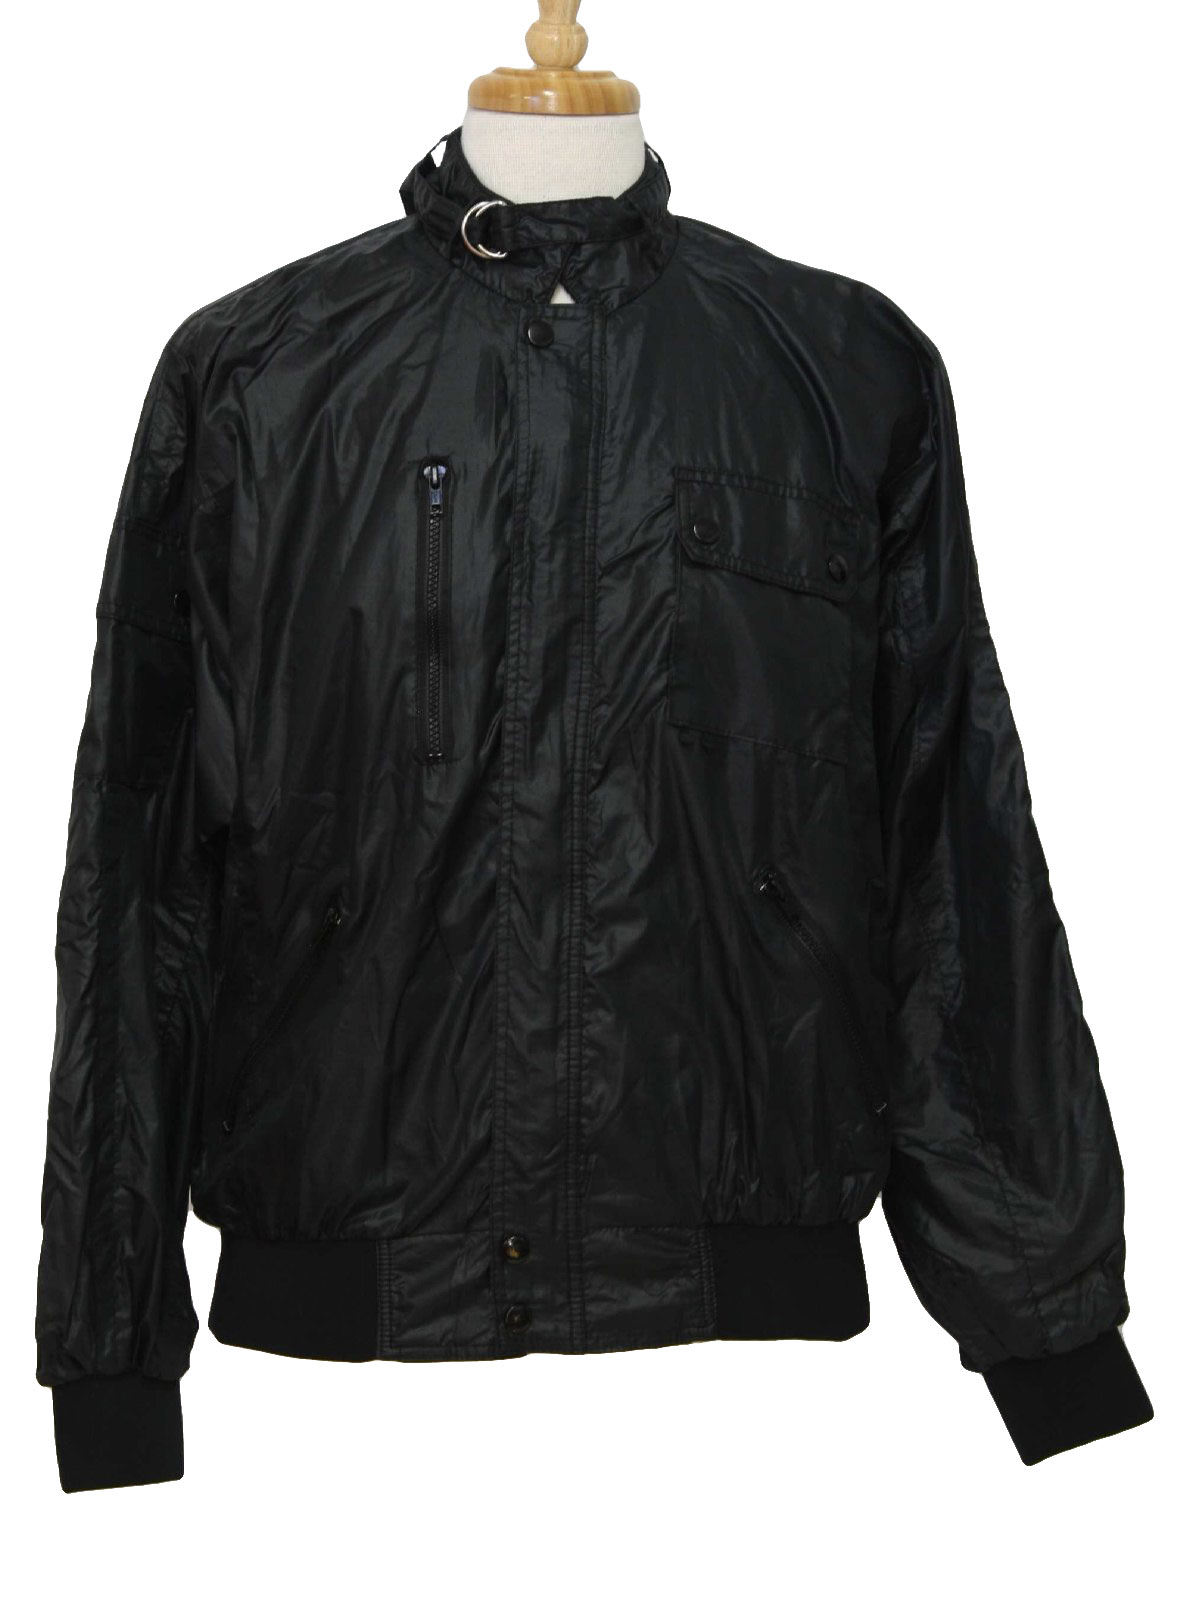 Retro Nineties Jacket: 90s -Tonkin Wearables- Mens black shiny ...